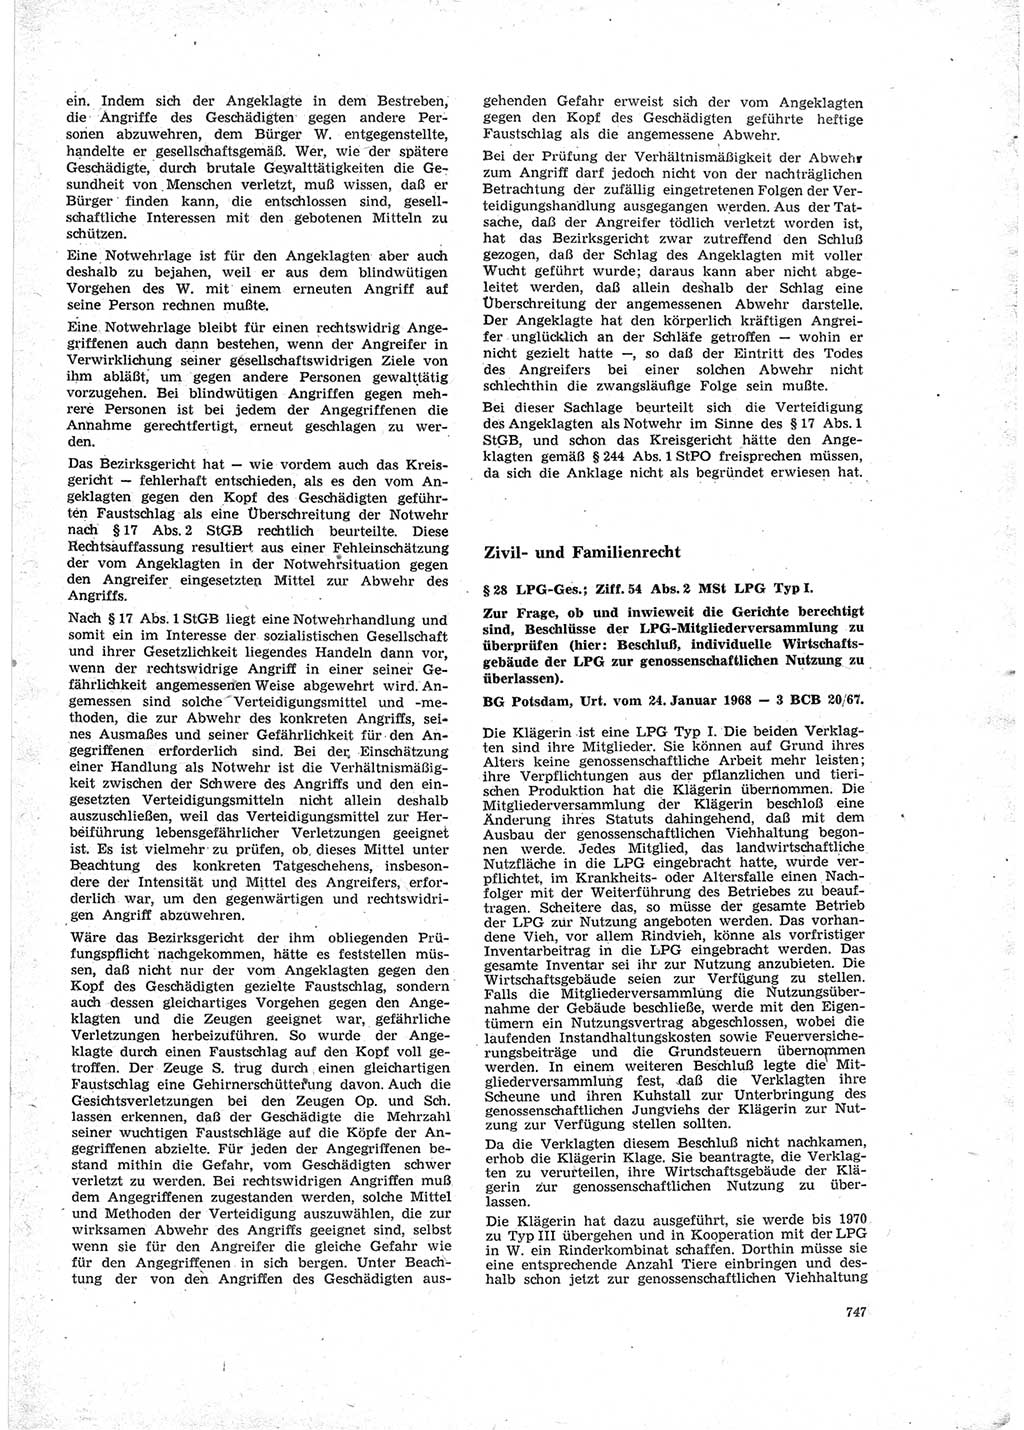 Neue Justiz (NJ), Zeitschrift für Recht und Rechtswissenschaft [Deutsche Demokratische Republik (DDR)], 23. Jahrgang 1969, Seite 747 (NJ DDR 1969, S. 747)